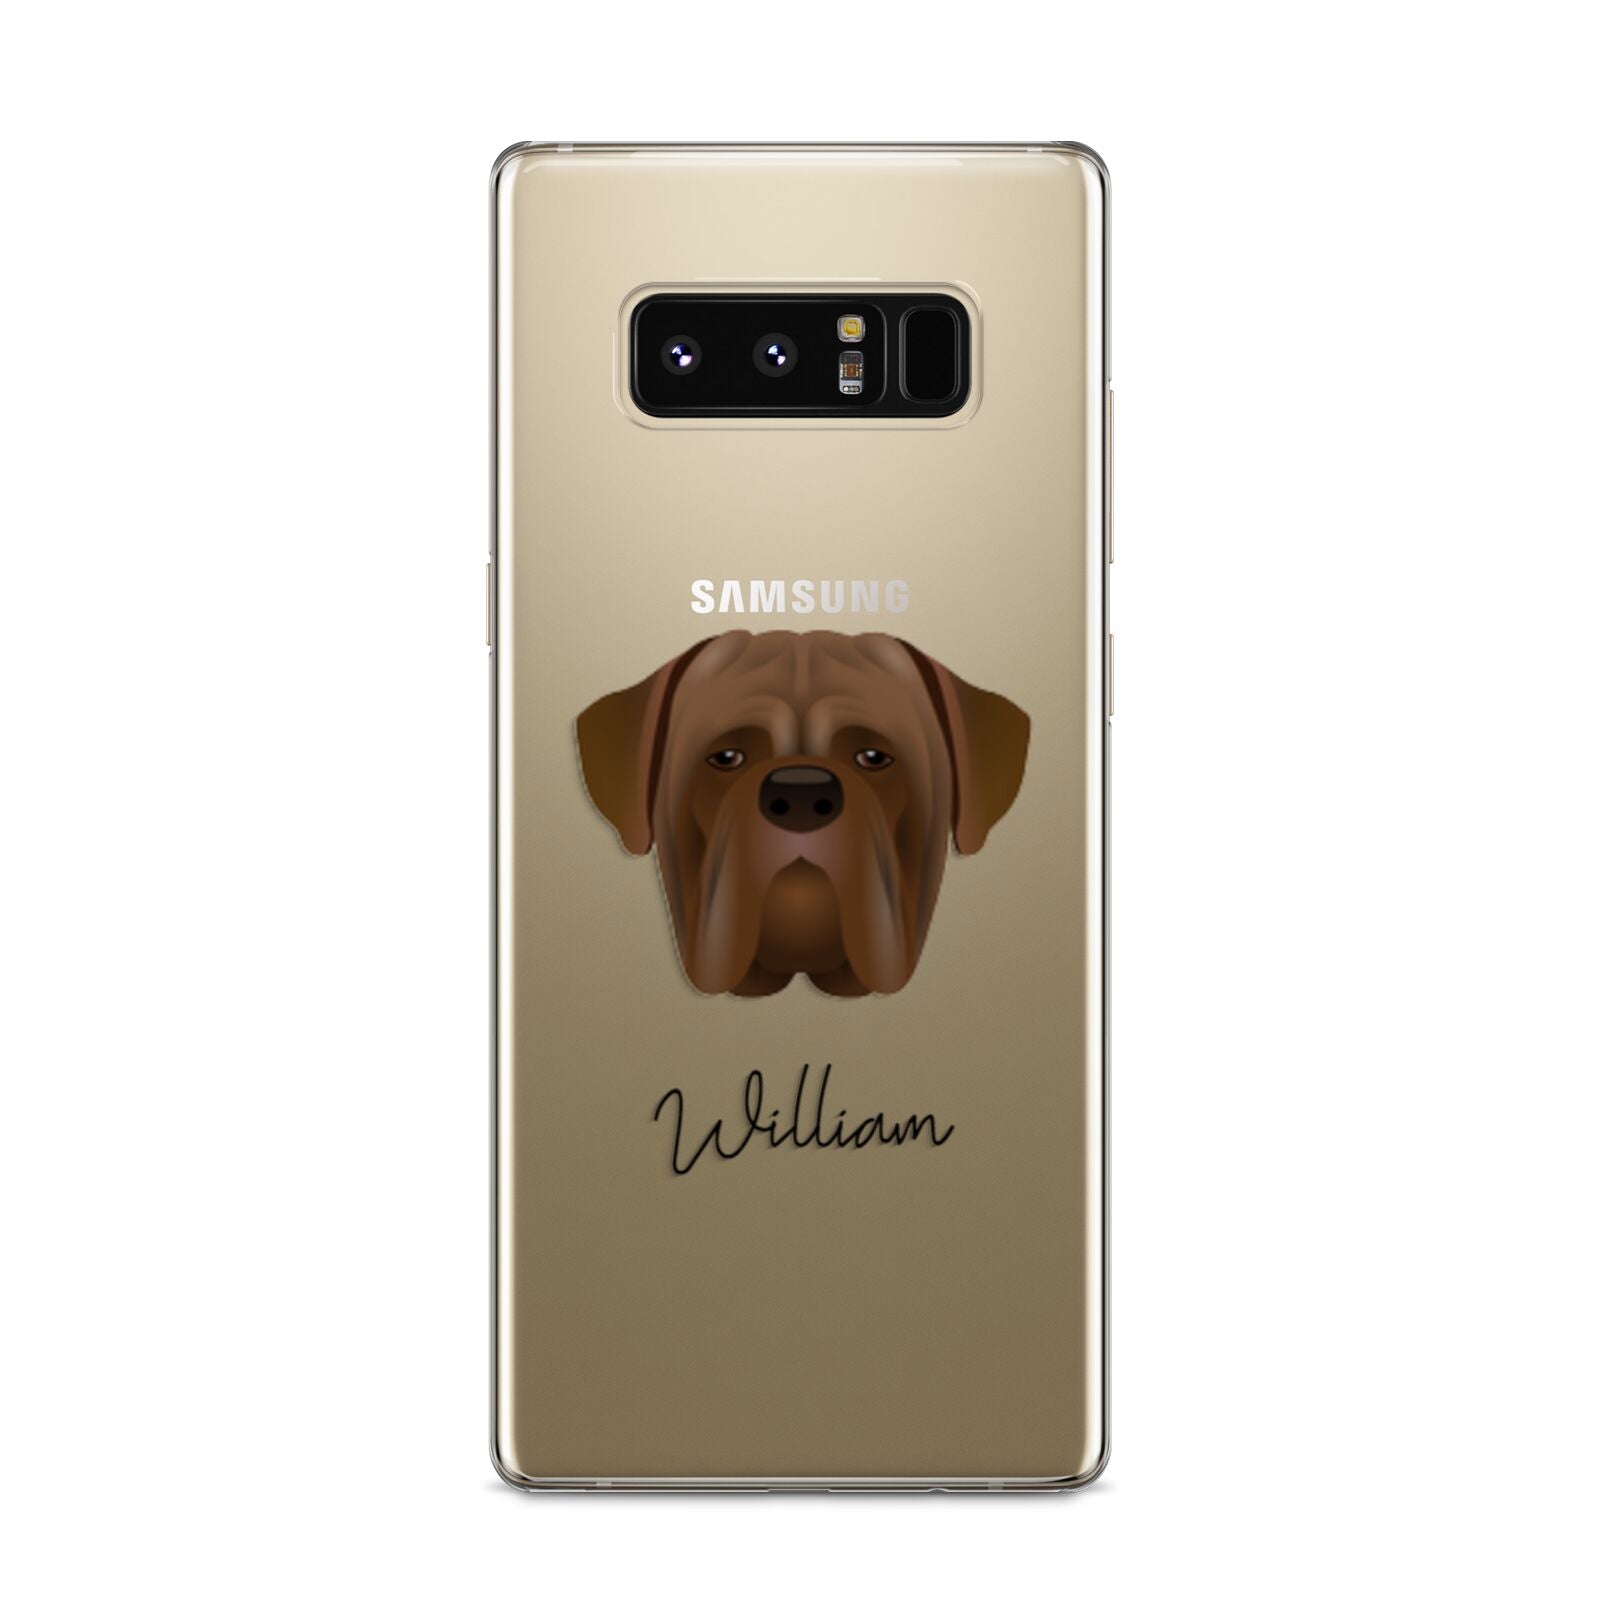 Dogue de Bordeaux Personalised Samsung Galaxy S8 Case